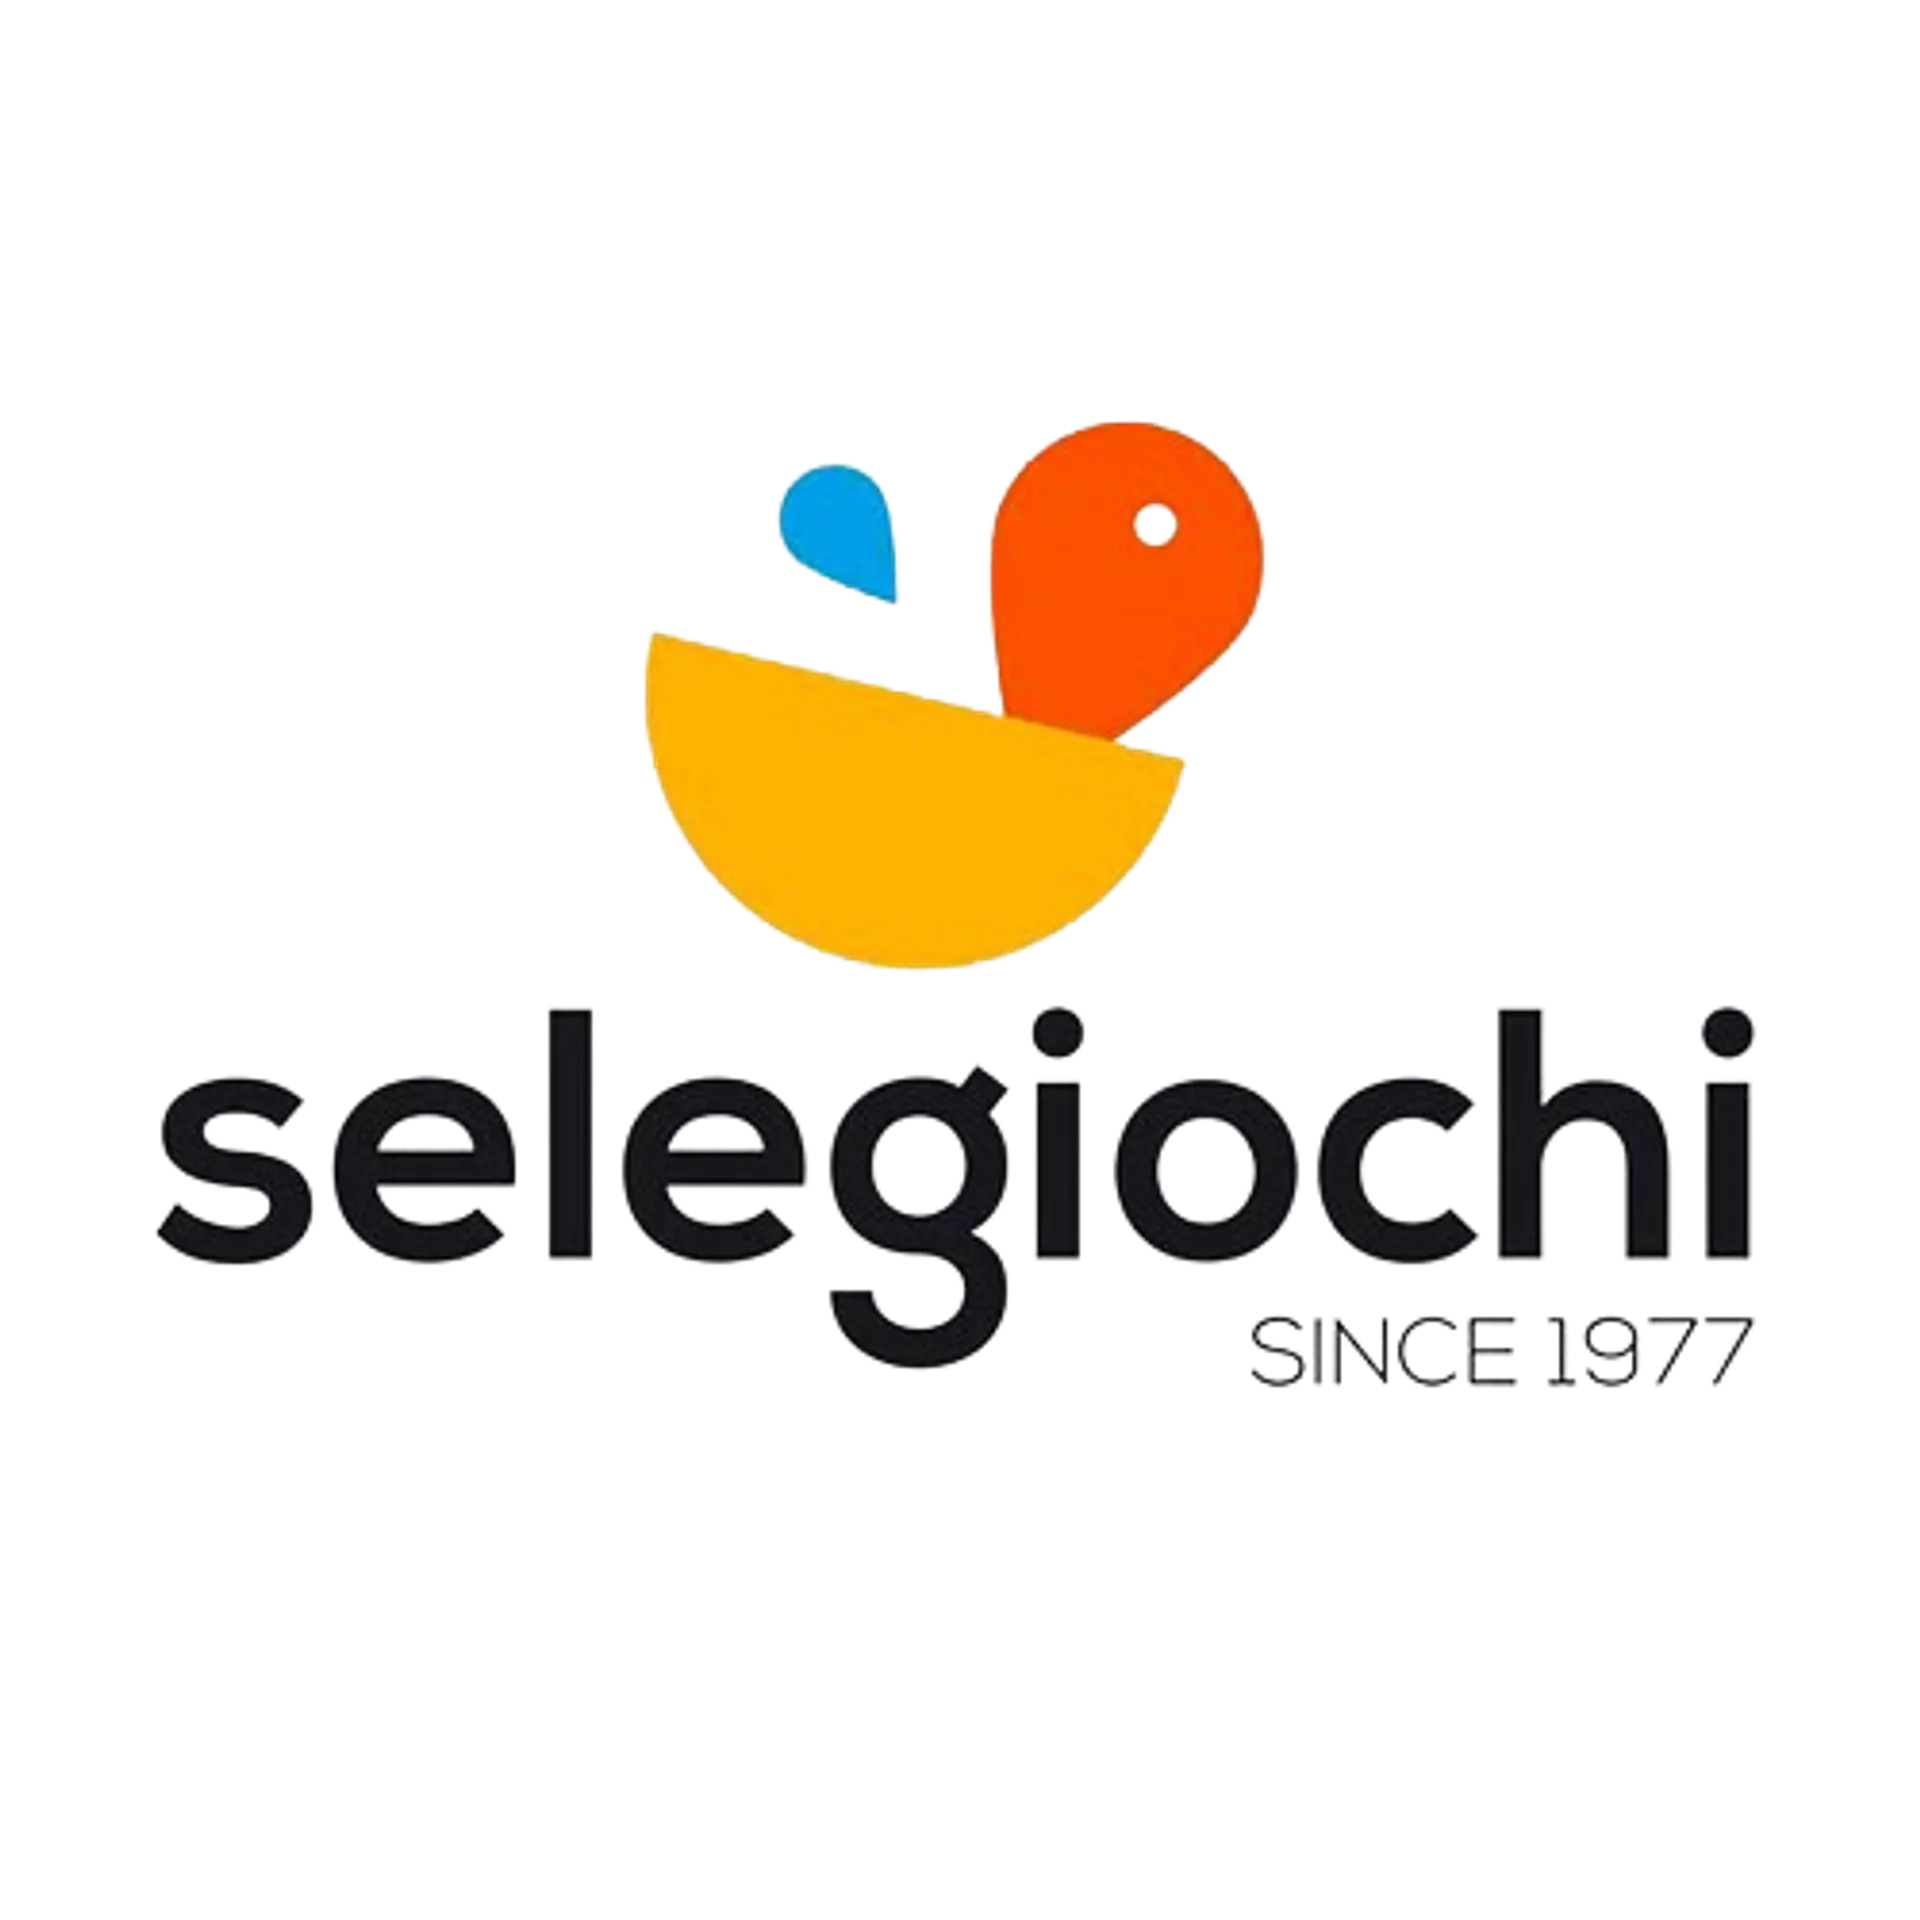 SELEGIOCHI logo